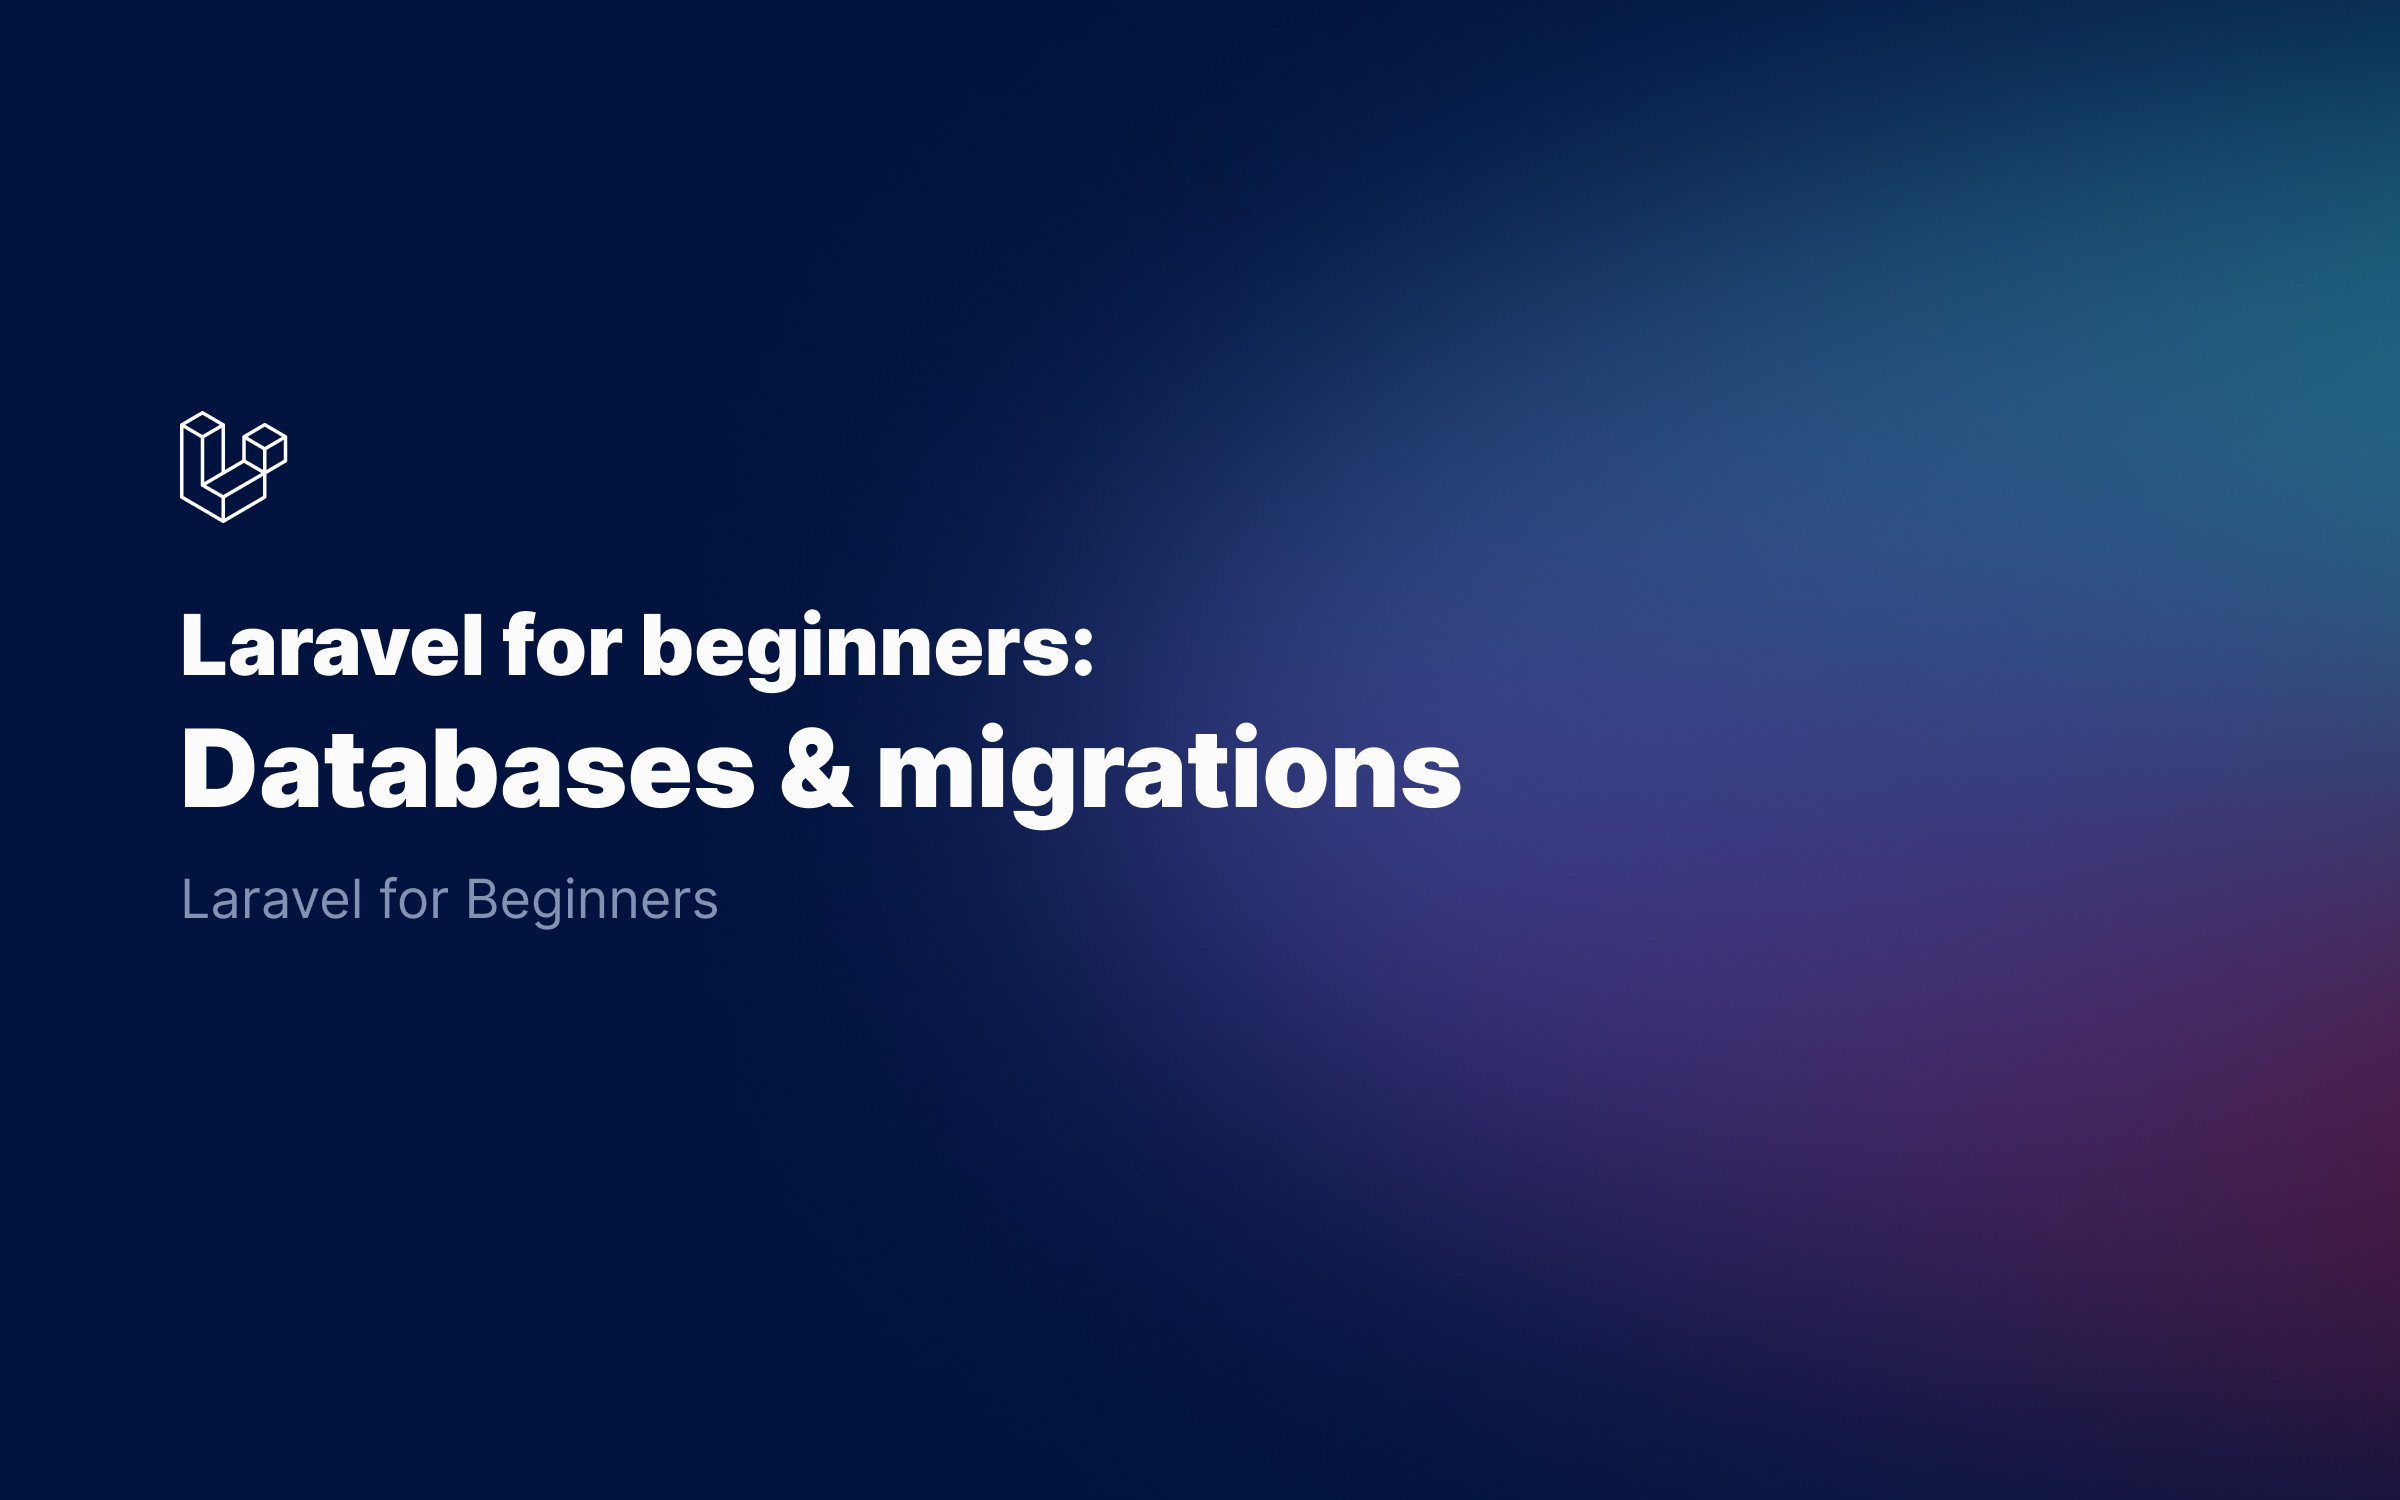 Laravel Databases & Migrations for Beginners (2021)